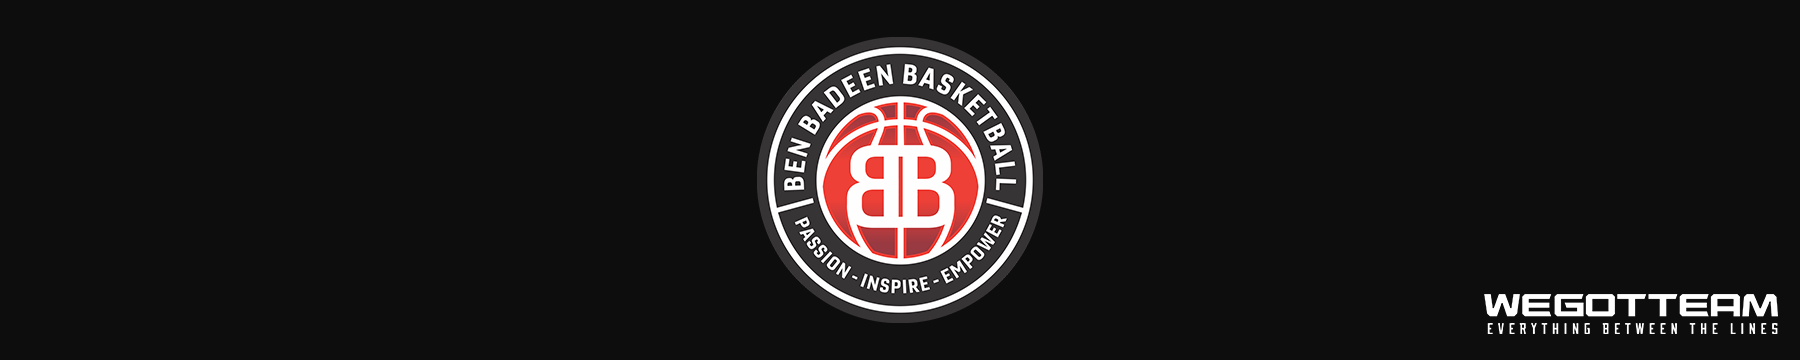 Ben Badeen Basketball